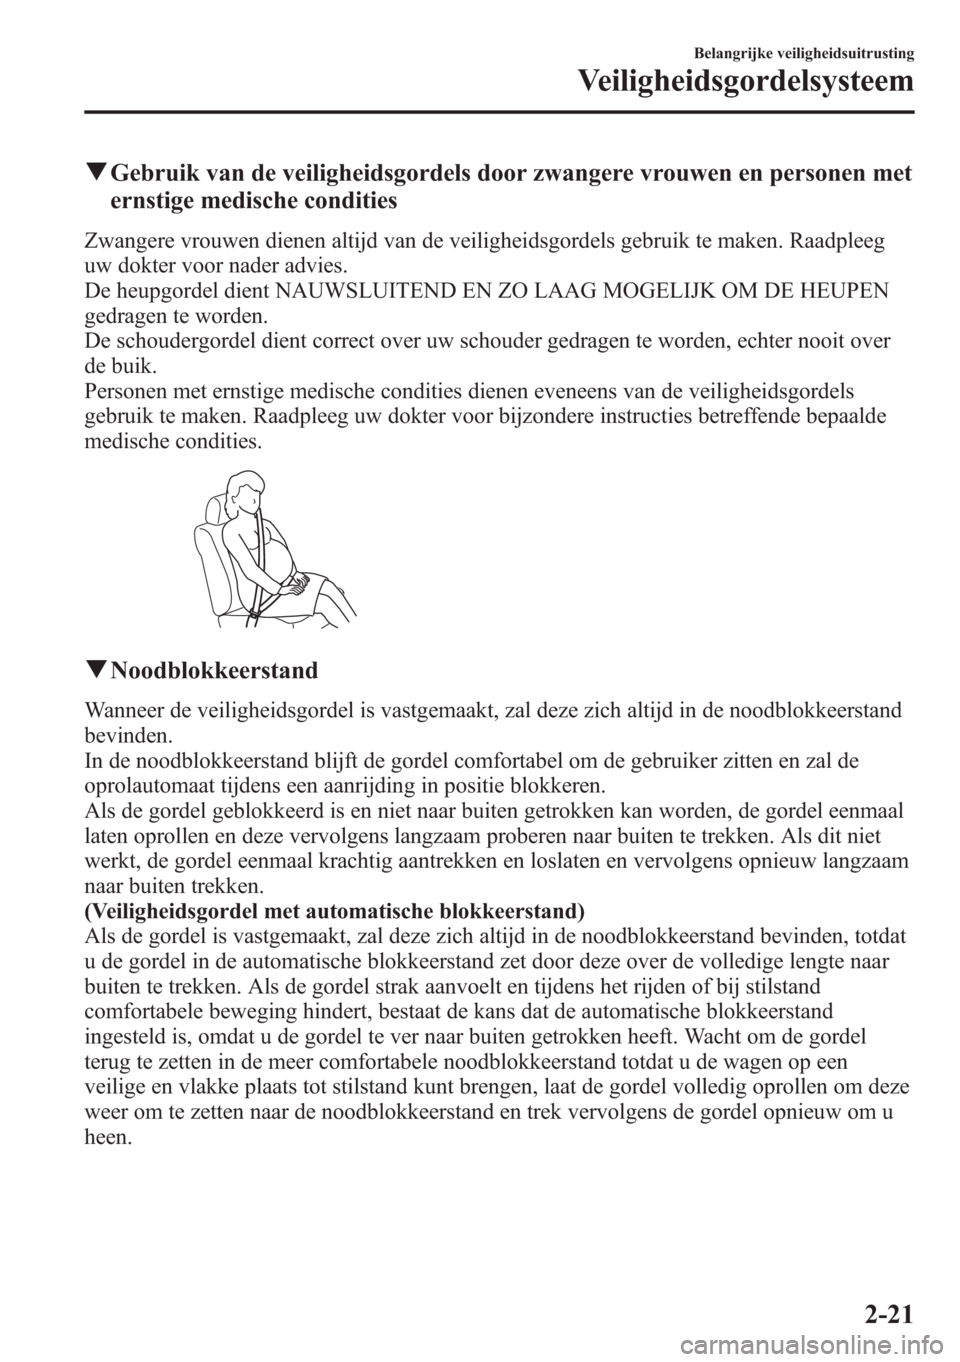 MAZDA MODEL CX-5 2013  Handleiding (in Dutch) qGebruik van de veiligheidsgordels door zwangere vrouwen en personen met
ernstige medische condities
Zwangere vrouwen dienen altijd van de veiligheidsgordels gebruik te maken. Raadpleeg
uw dokter voor